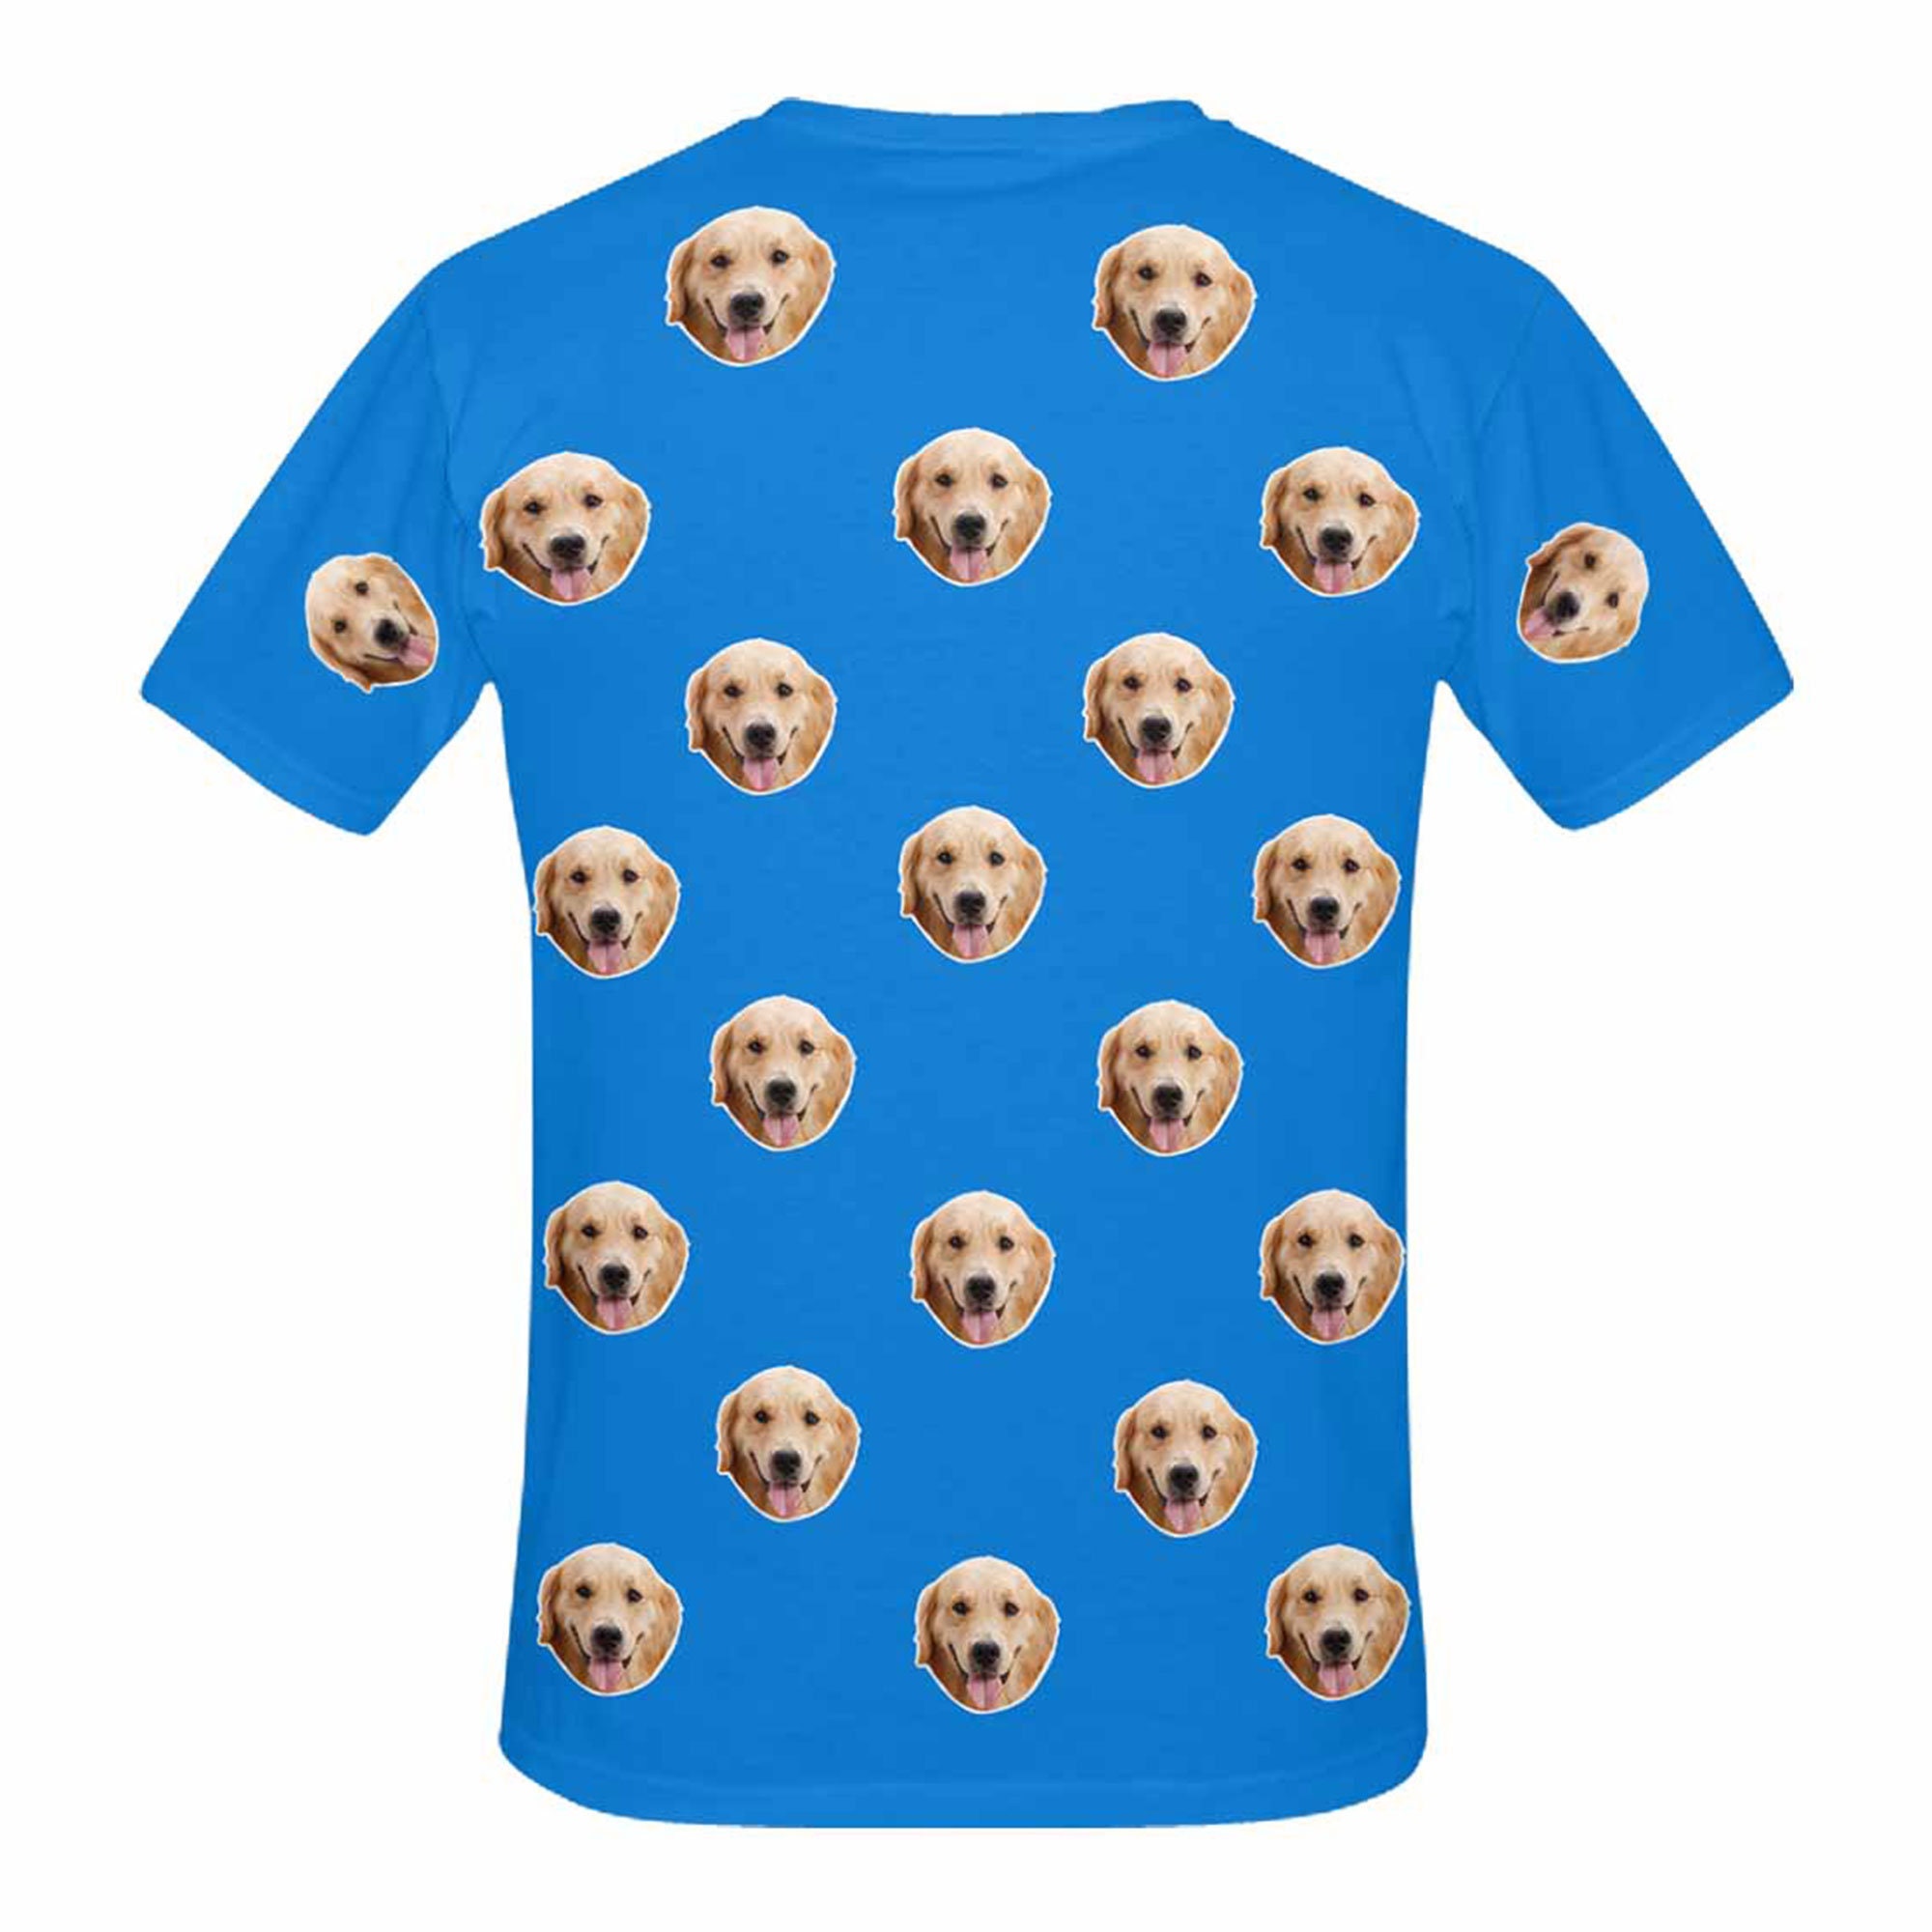 Custom Dog Face Shirt Funny Dogs Photo Shirts Personalized | Etsy